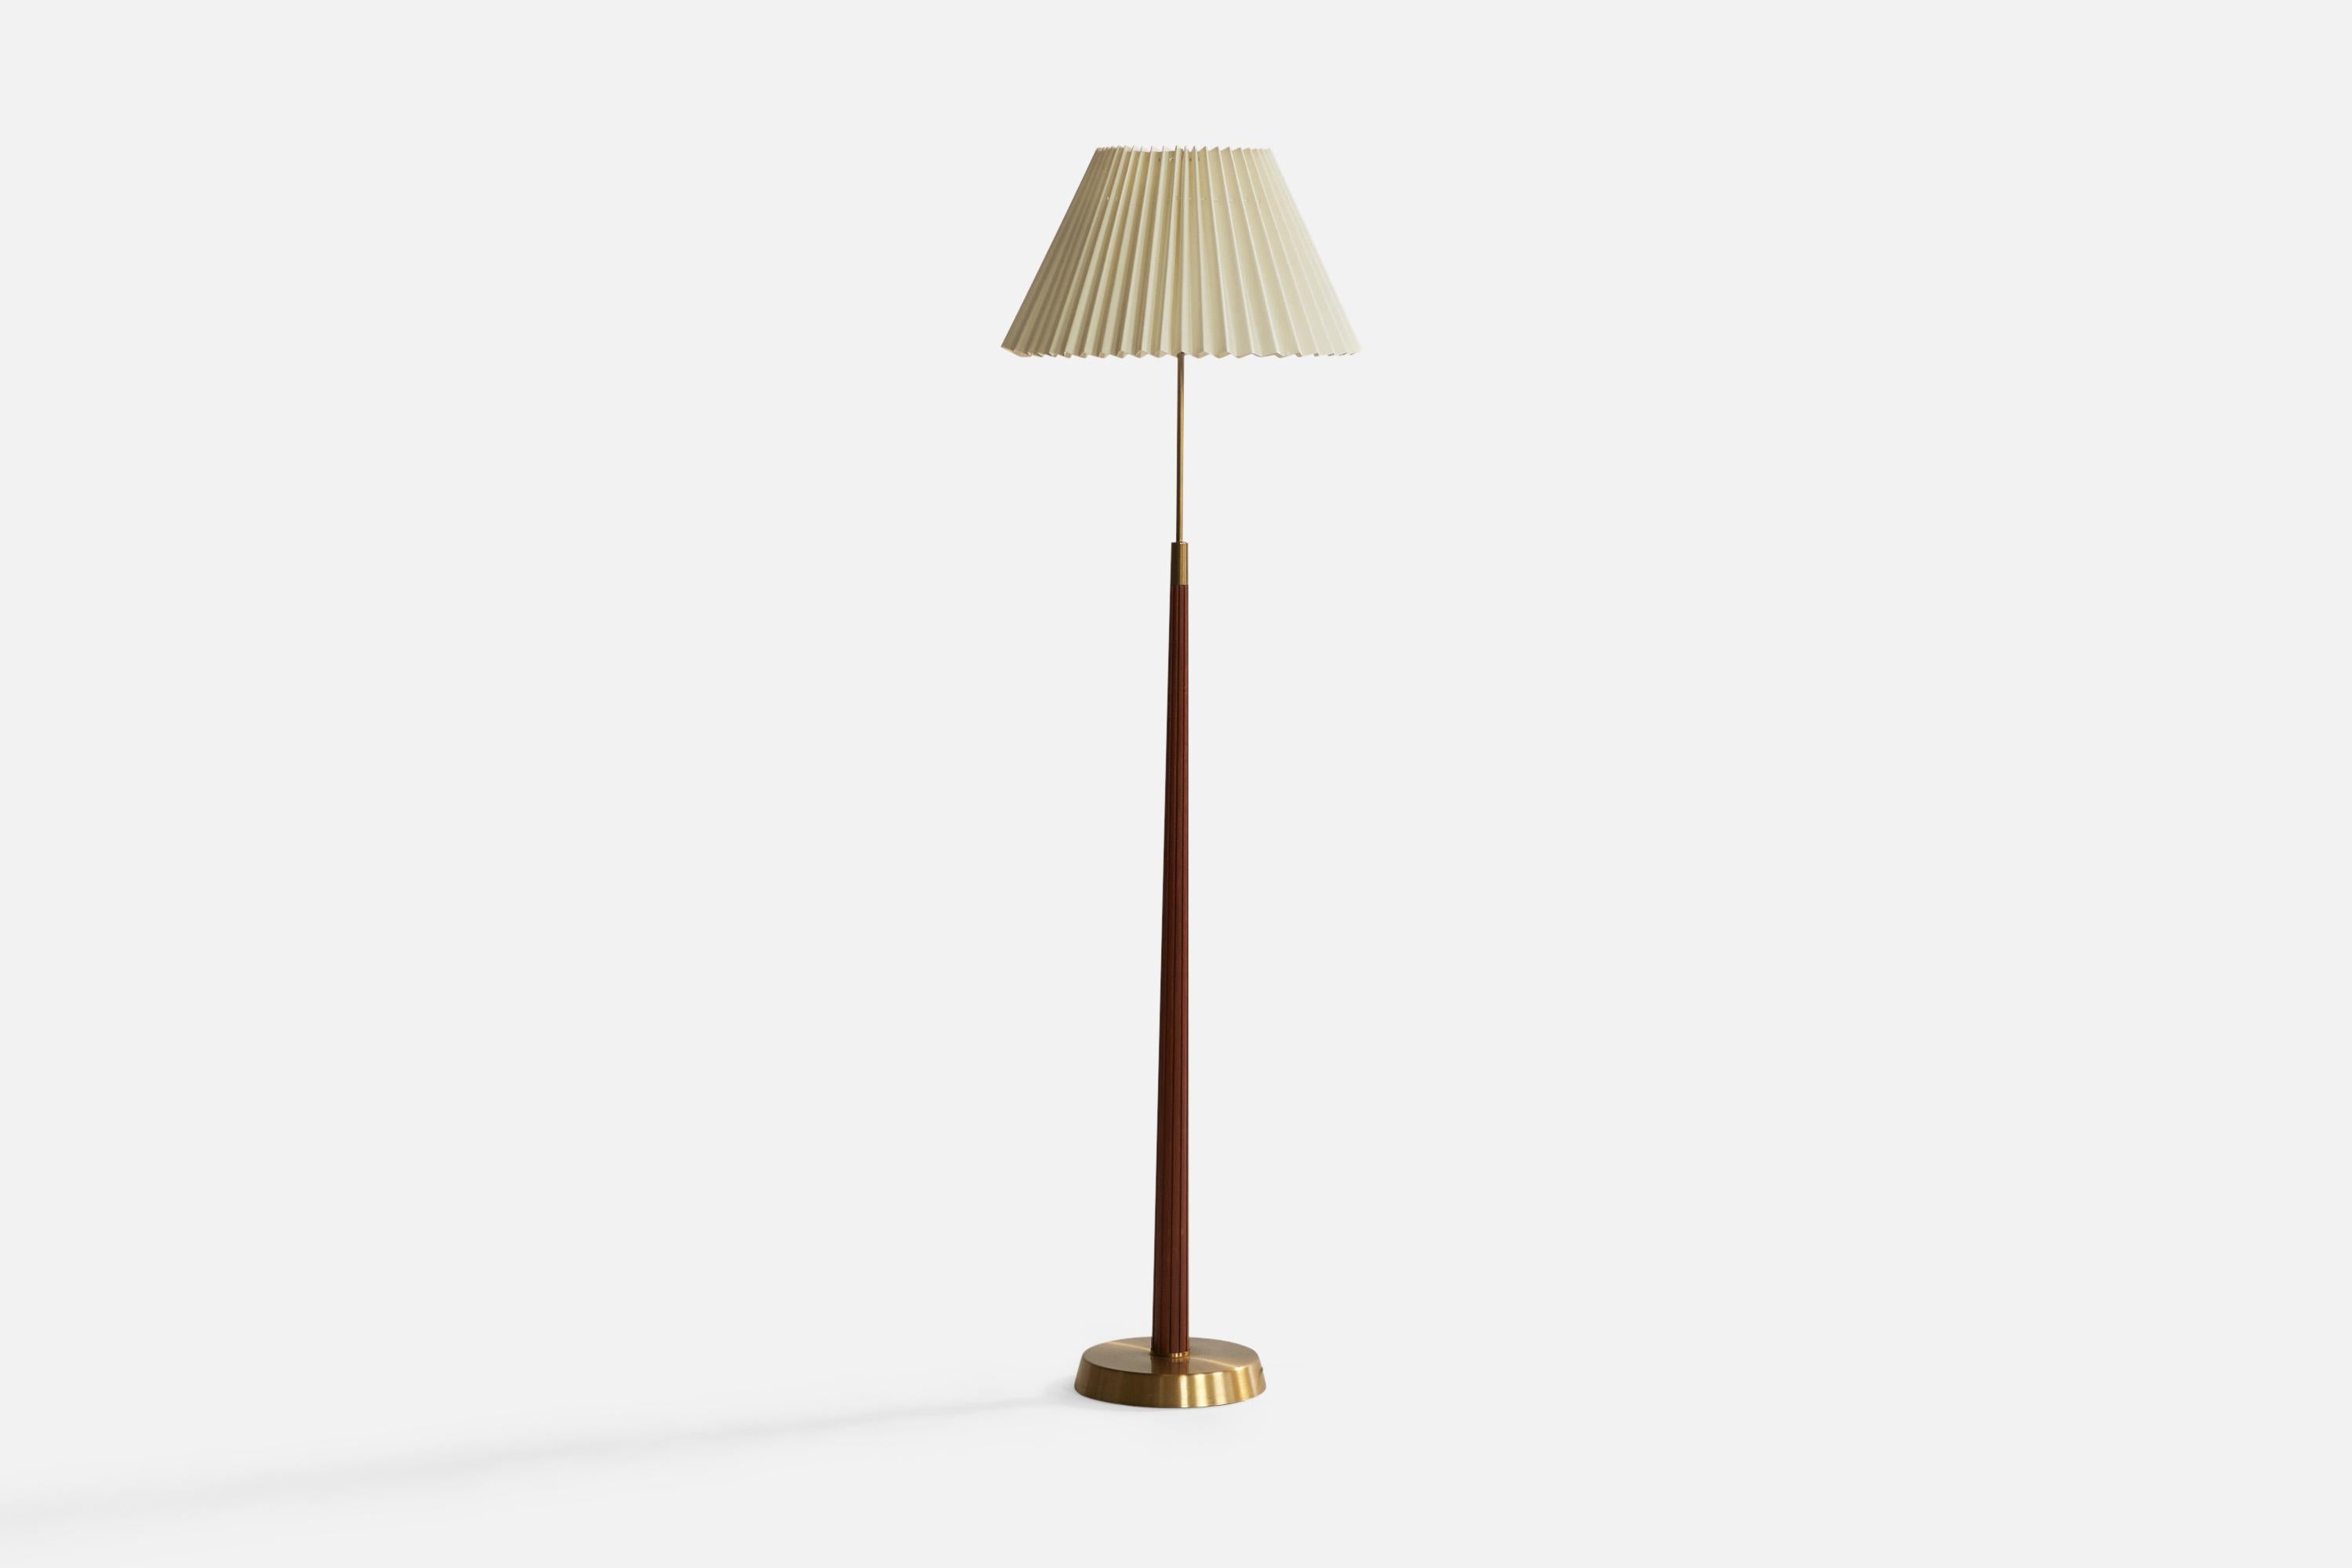 Stehlampe aus Messing, Ulme und cremefarbenem Stoff, entworfen von Hans Bergström und hergestellt von ASEA, Schweden, 1940er Jahre.

Gesamtabmessungen (Zoll): 62,6